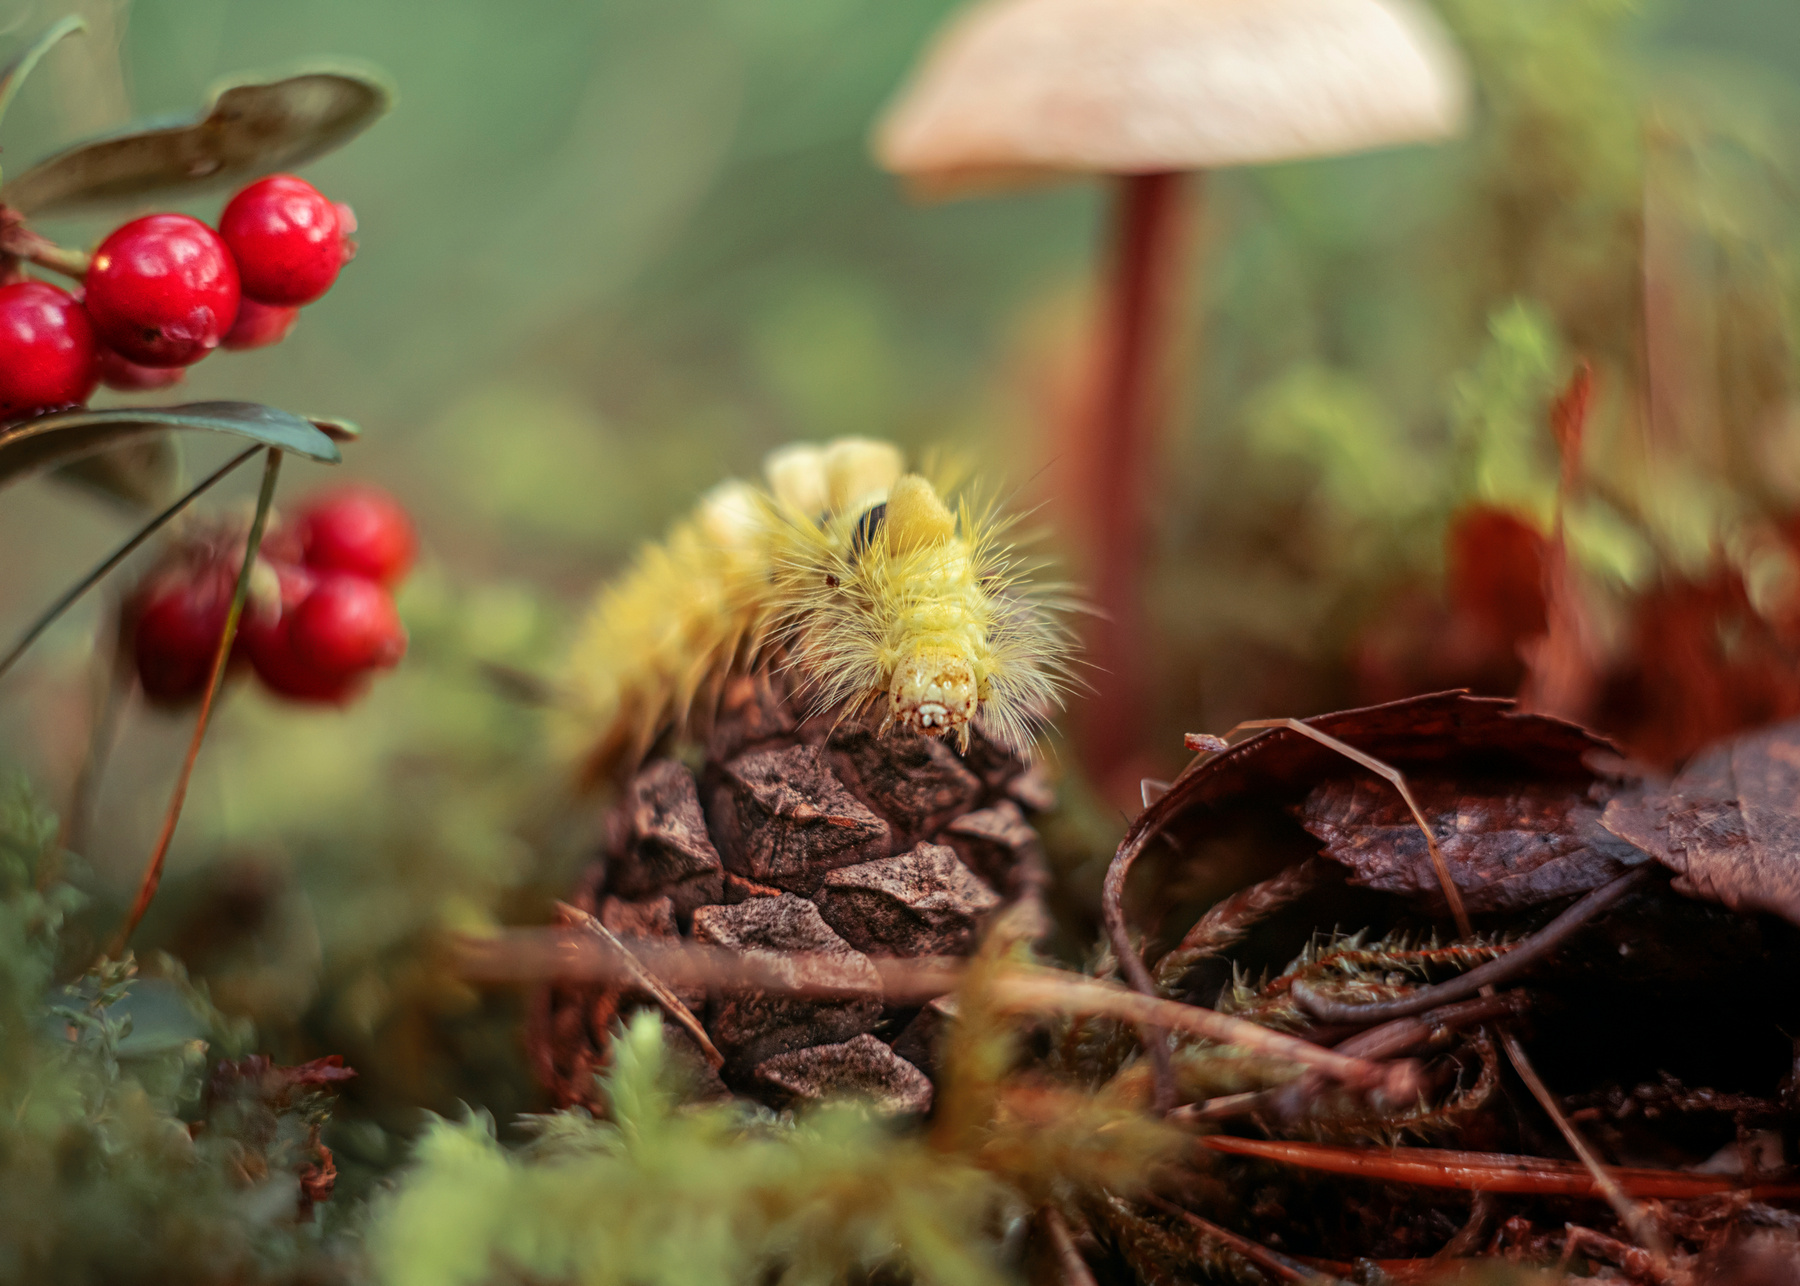 *** гриб лес природа макро ягода брусника гусеница